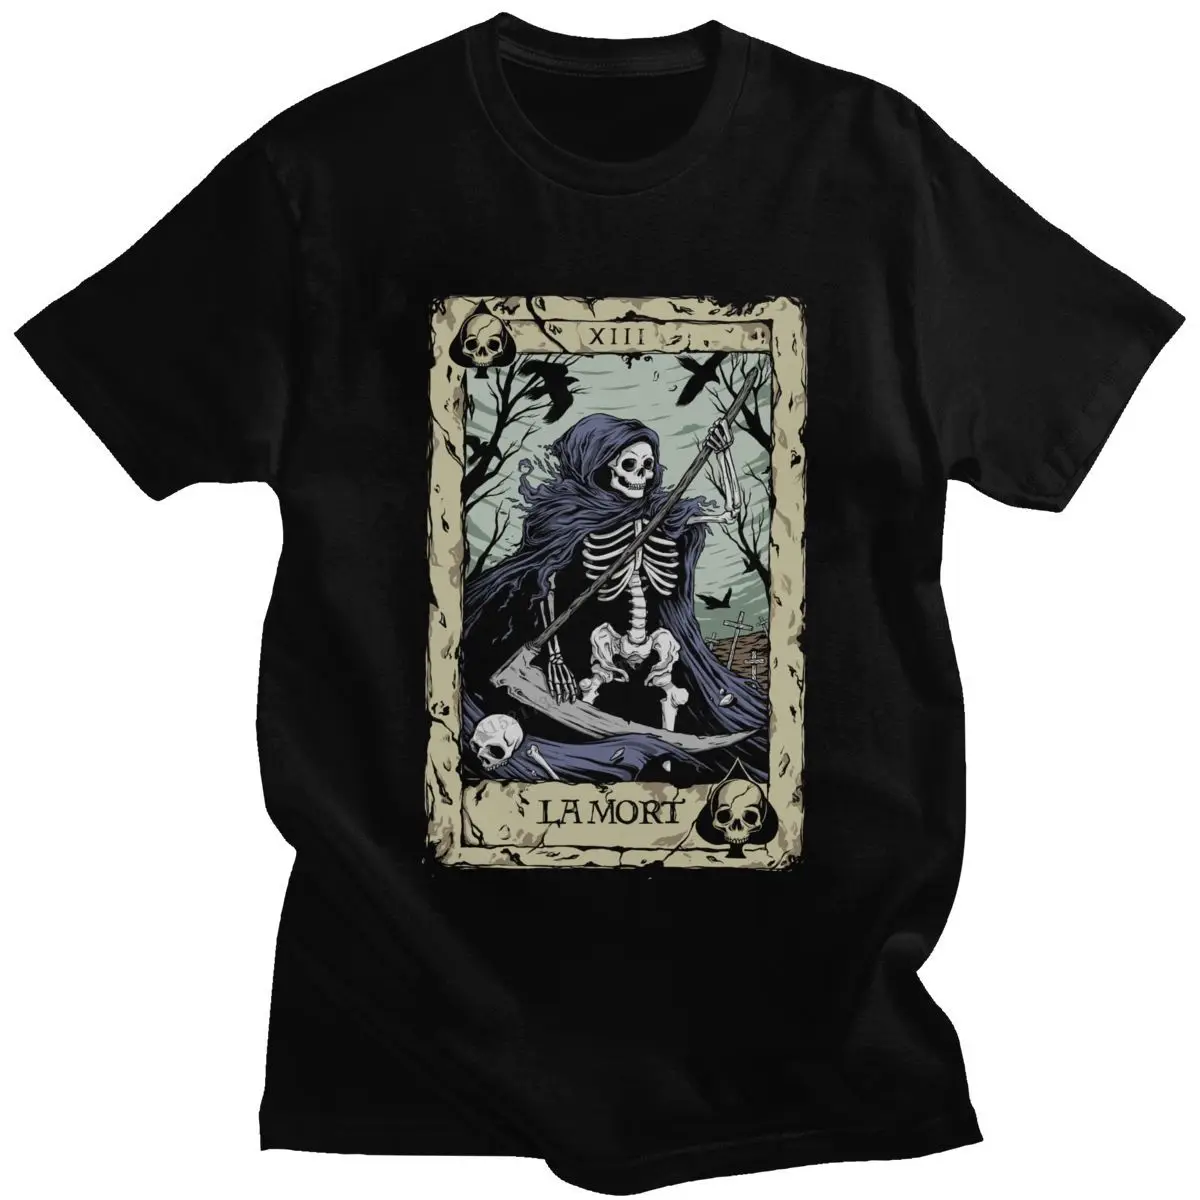 Футболка мужская с надписью Death футболка изображением карт Таро | Мужская одежда